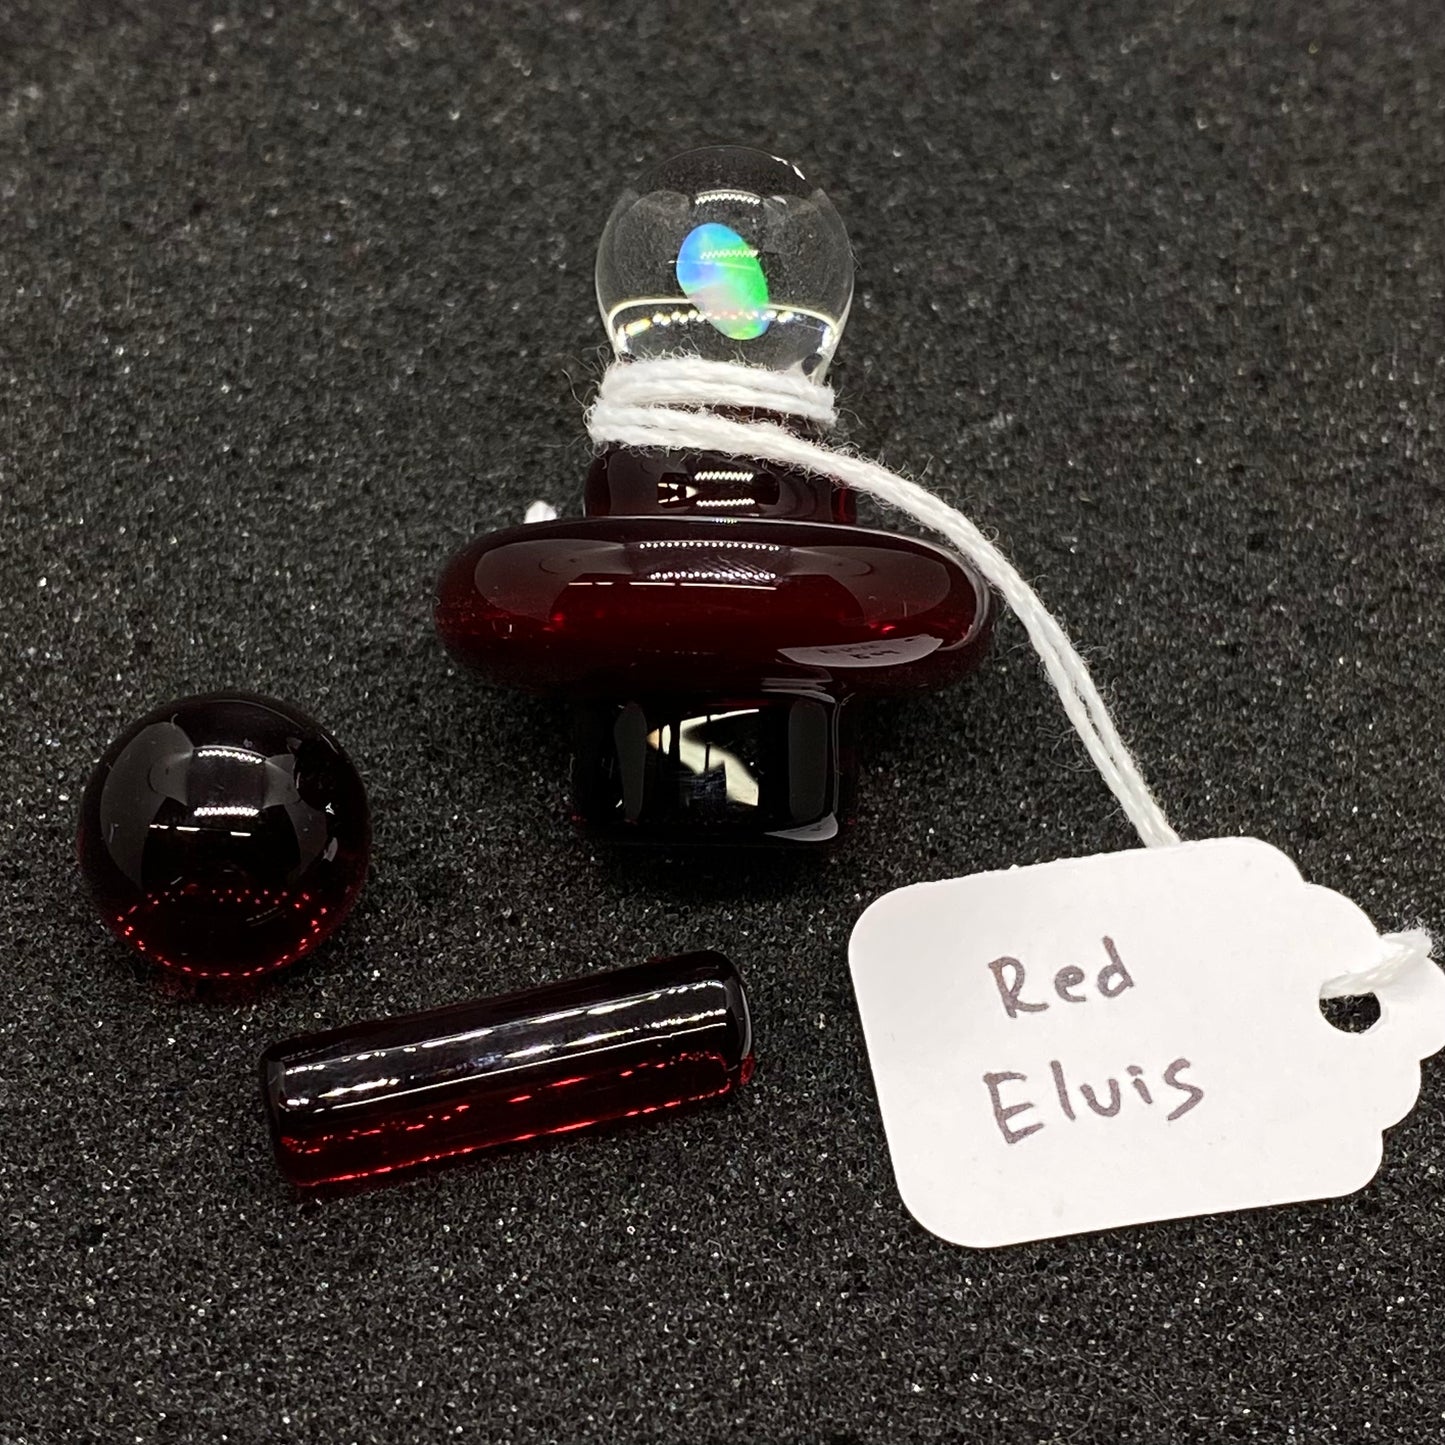 CPB Glass - Red Elvis Slurper/Blender Plug Cap Set